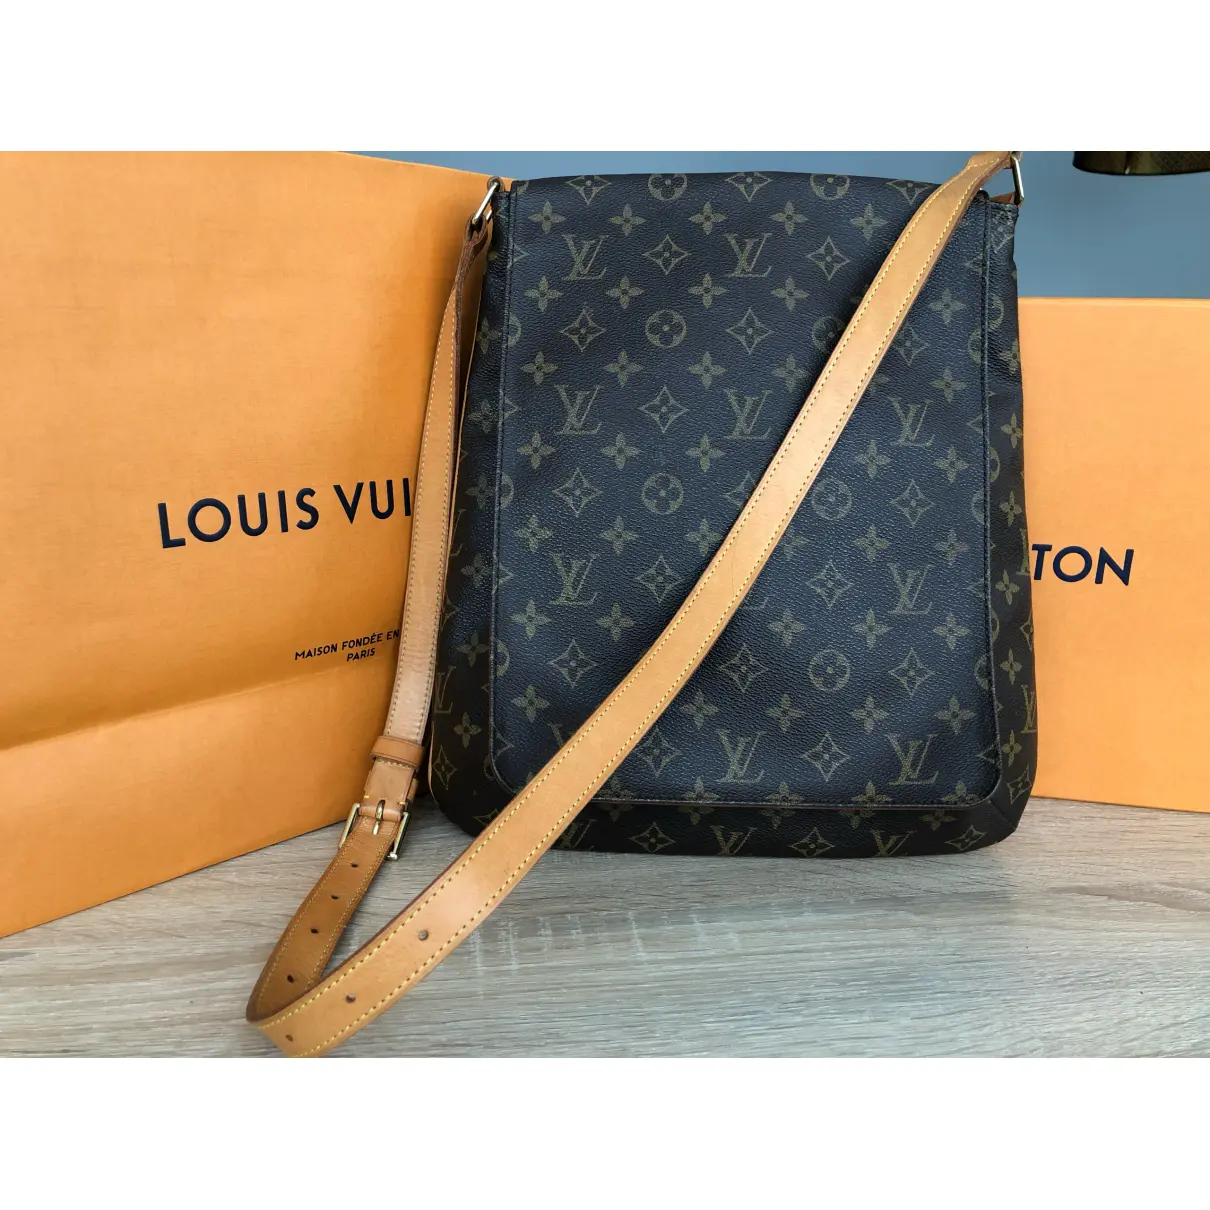 Musette leather handbag Louis Vuitton